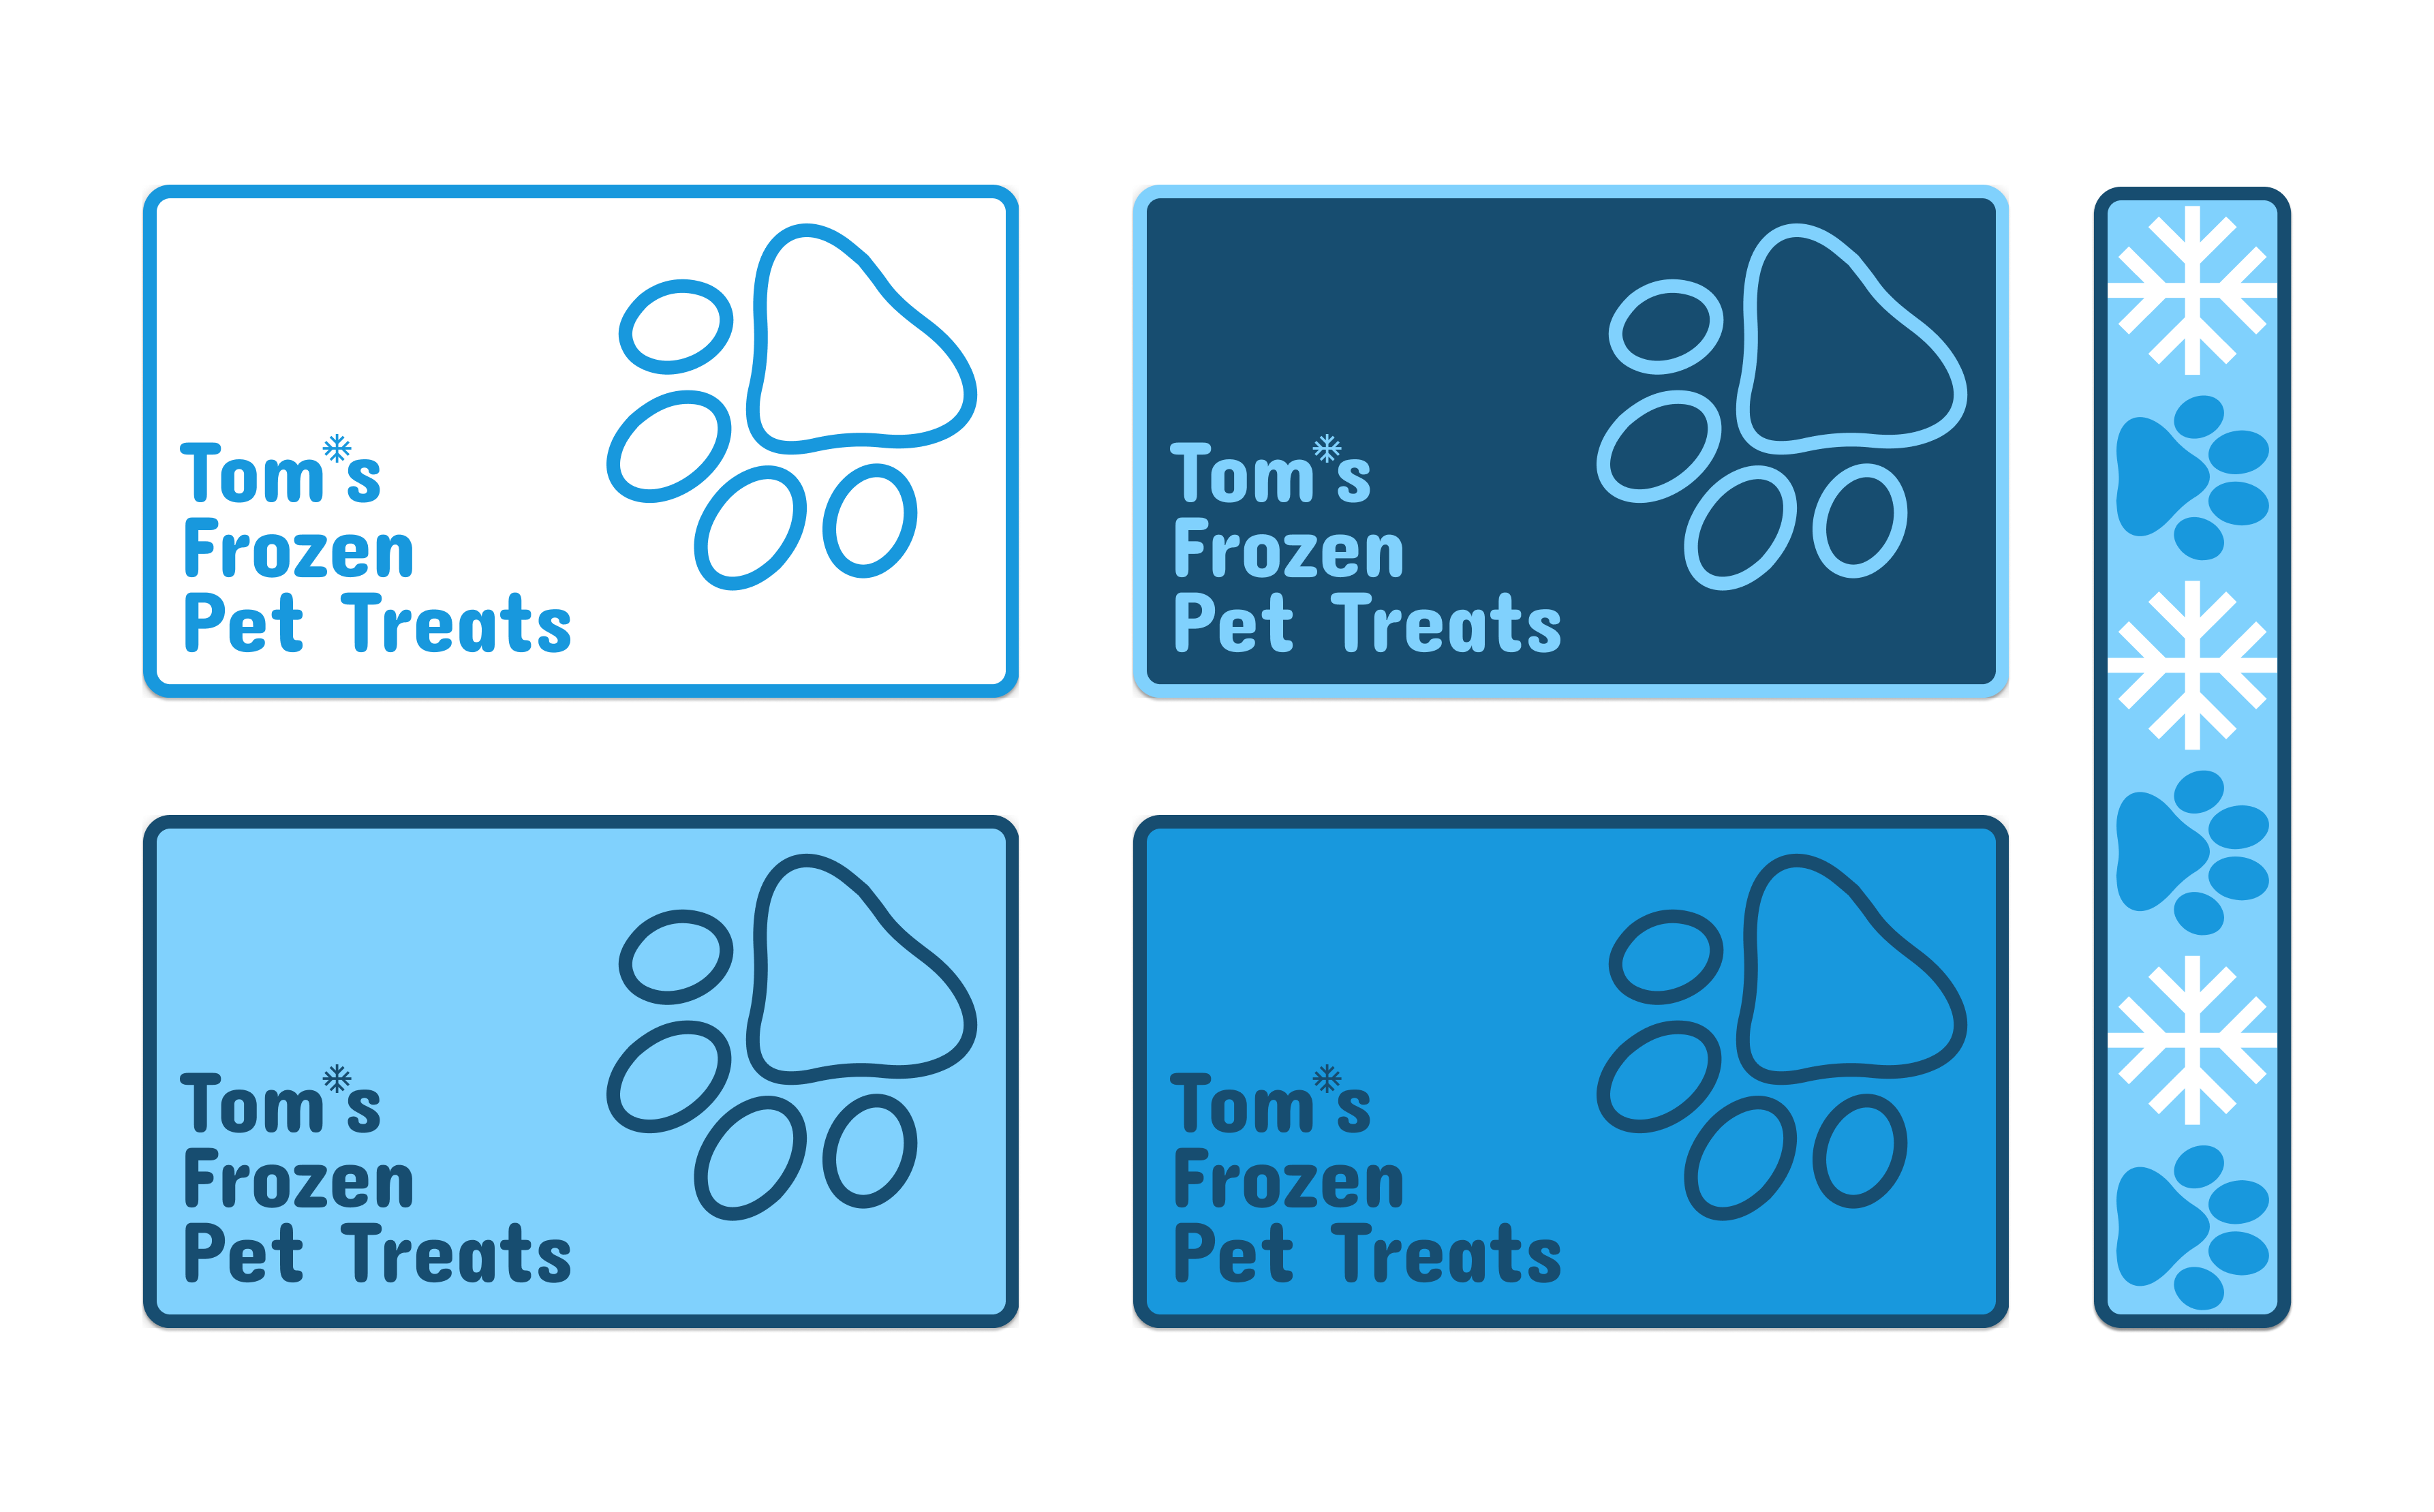 Branding Materials of Tom’s Frozen Pet Treats